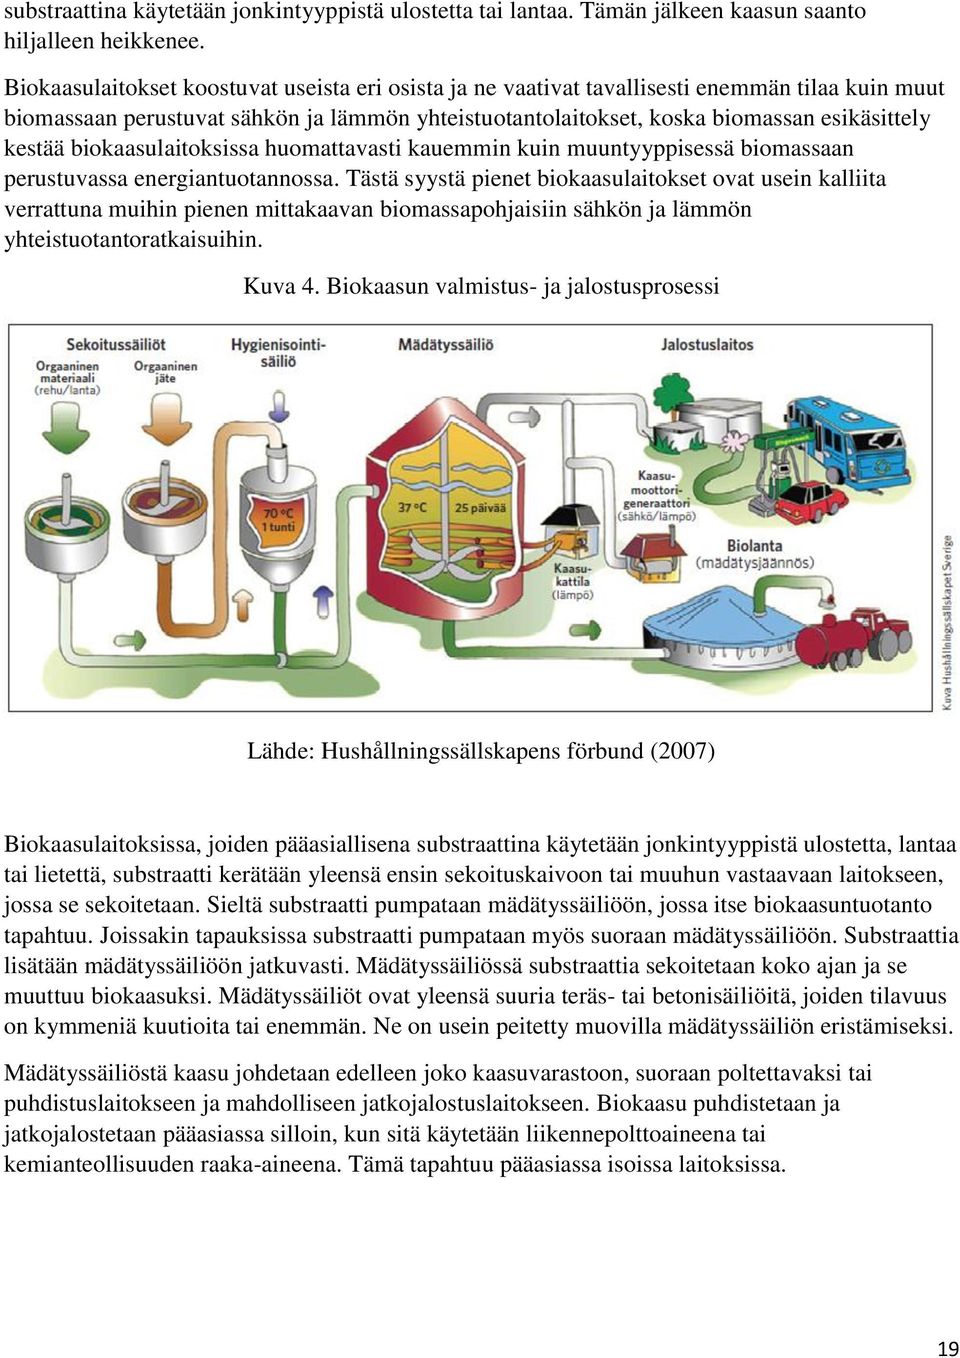 biokaasulaitoksissa huomattavasti kauemmin kuin muuntyyppisessä biomassaan perustuvassa energiantuotannossa.